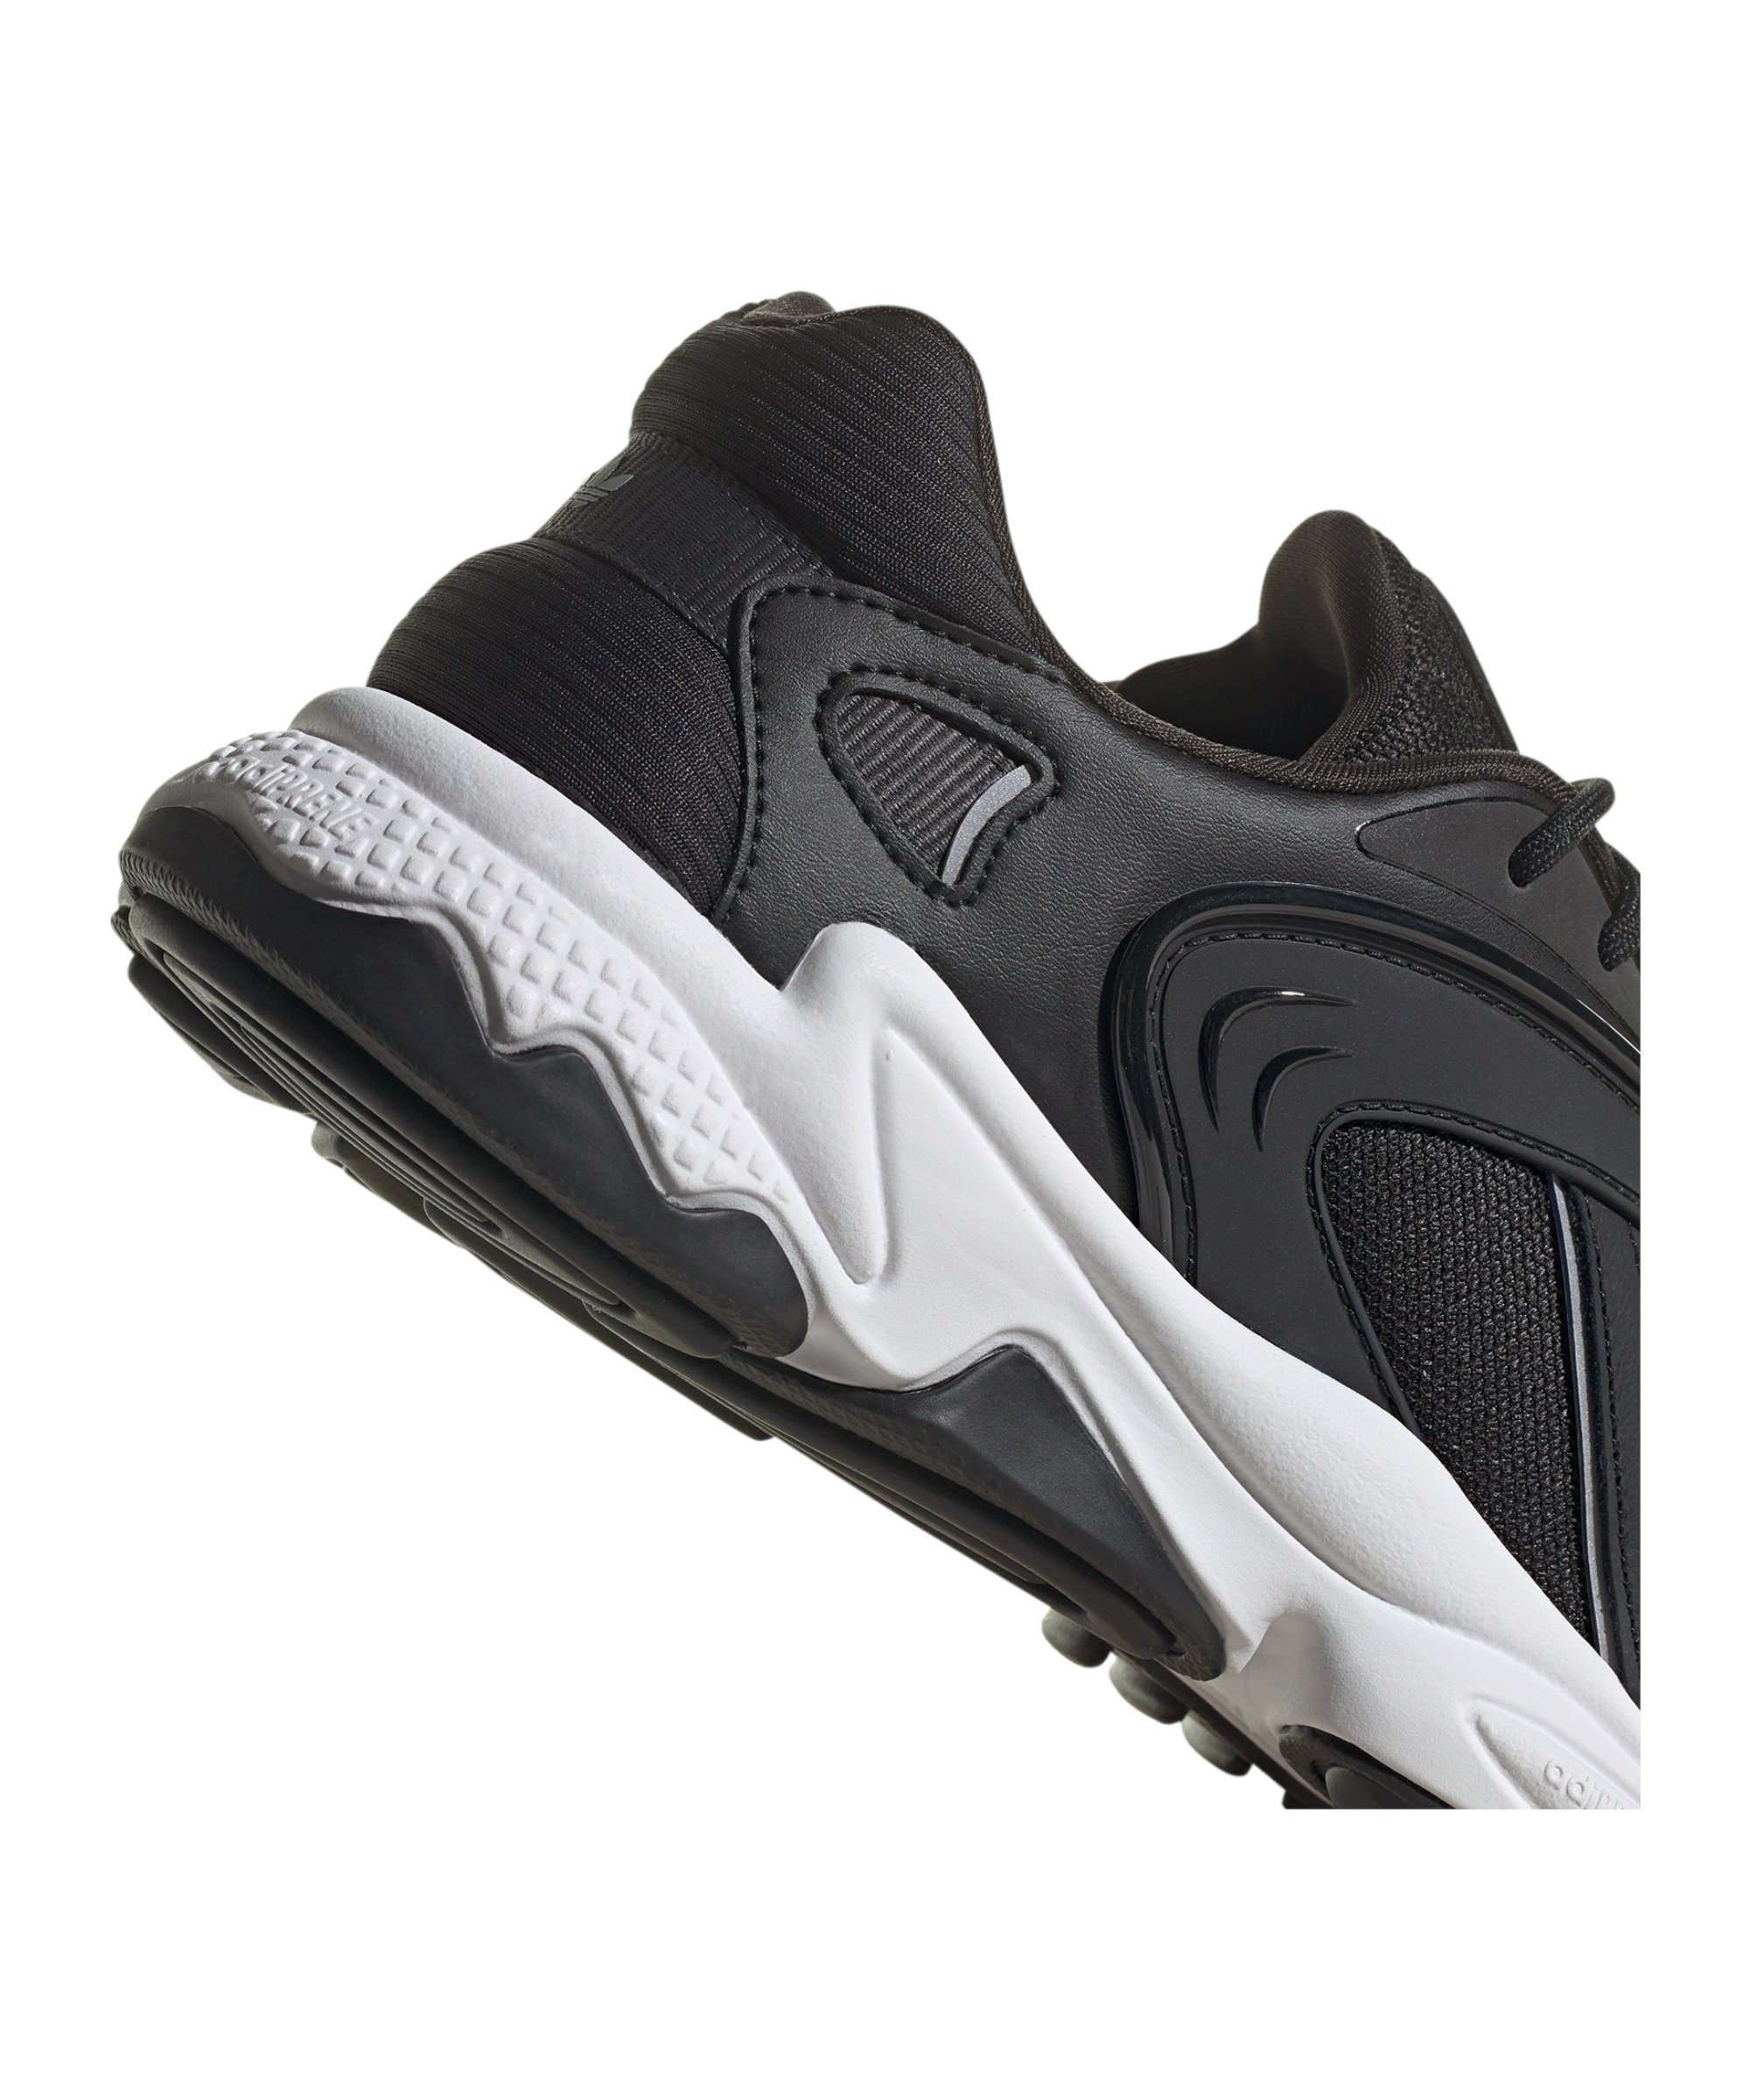 Oztral schwarzsilber Sneaker adidas Originals